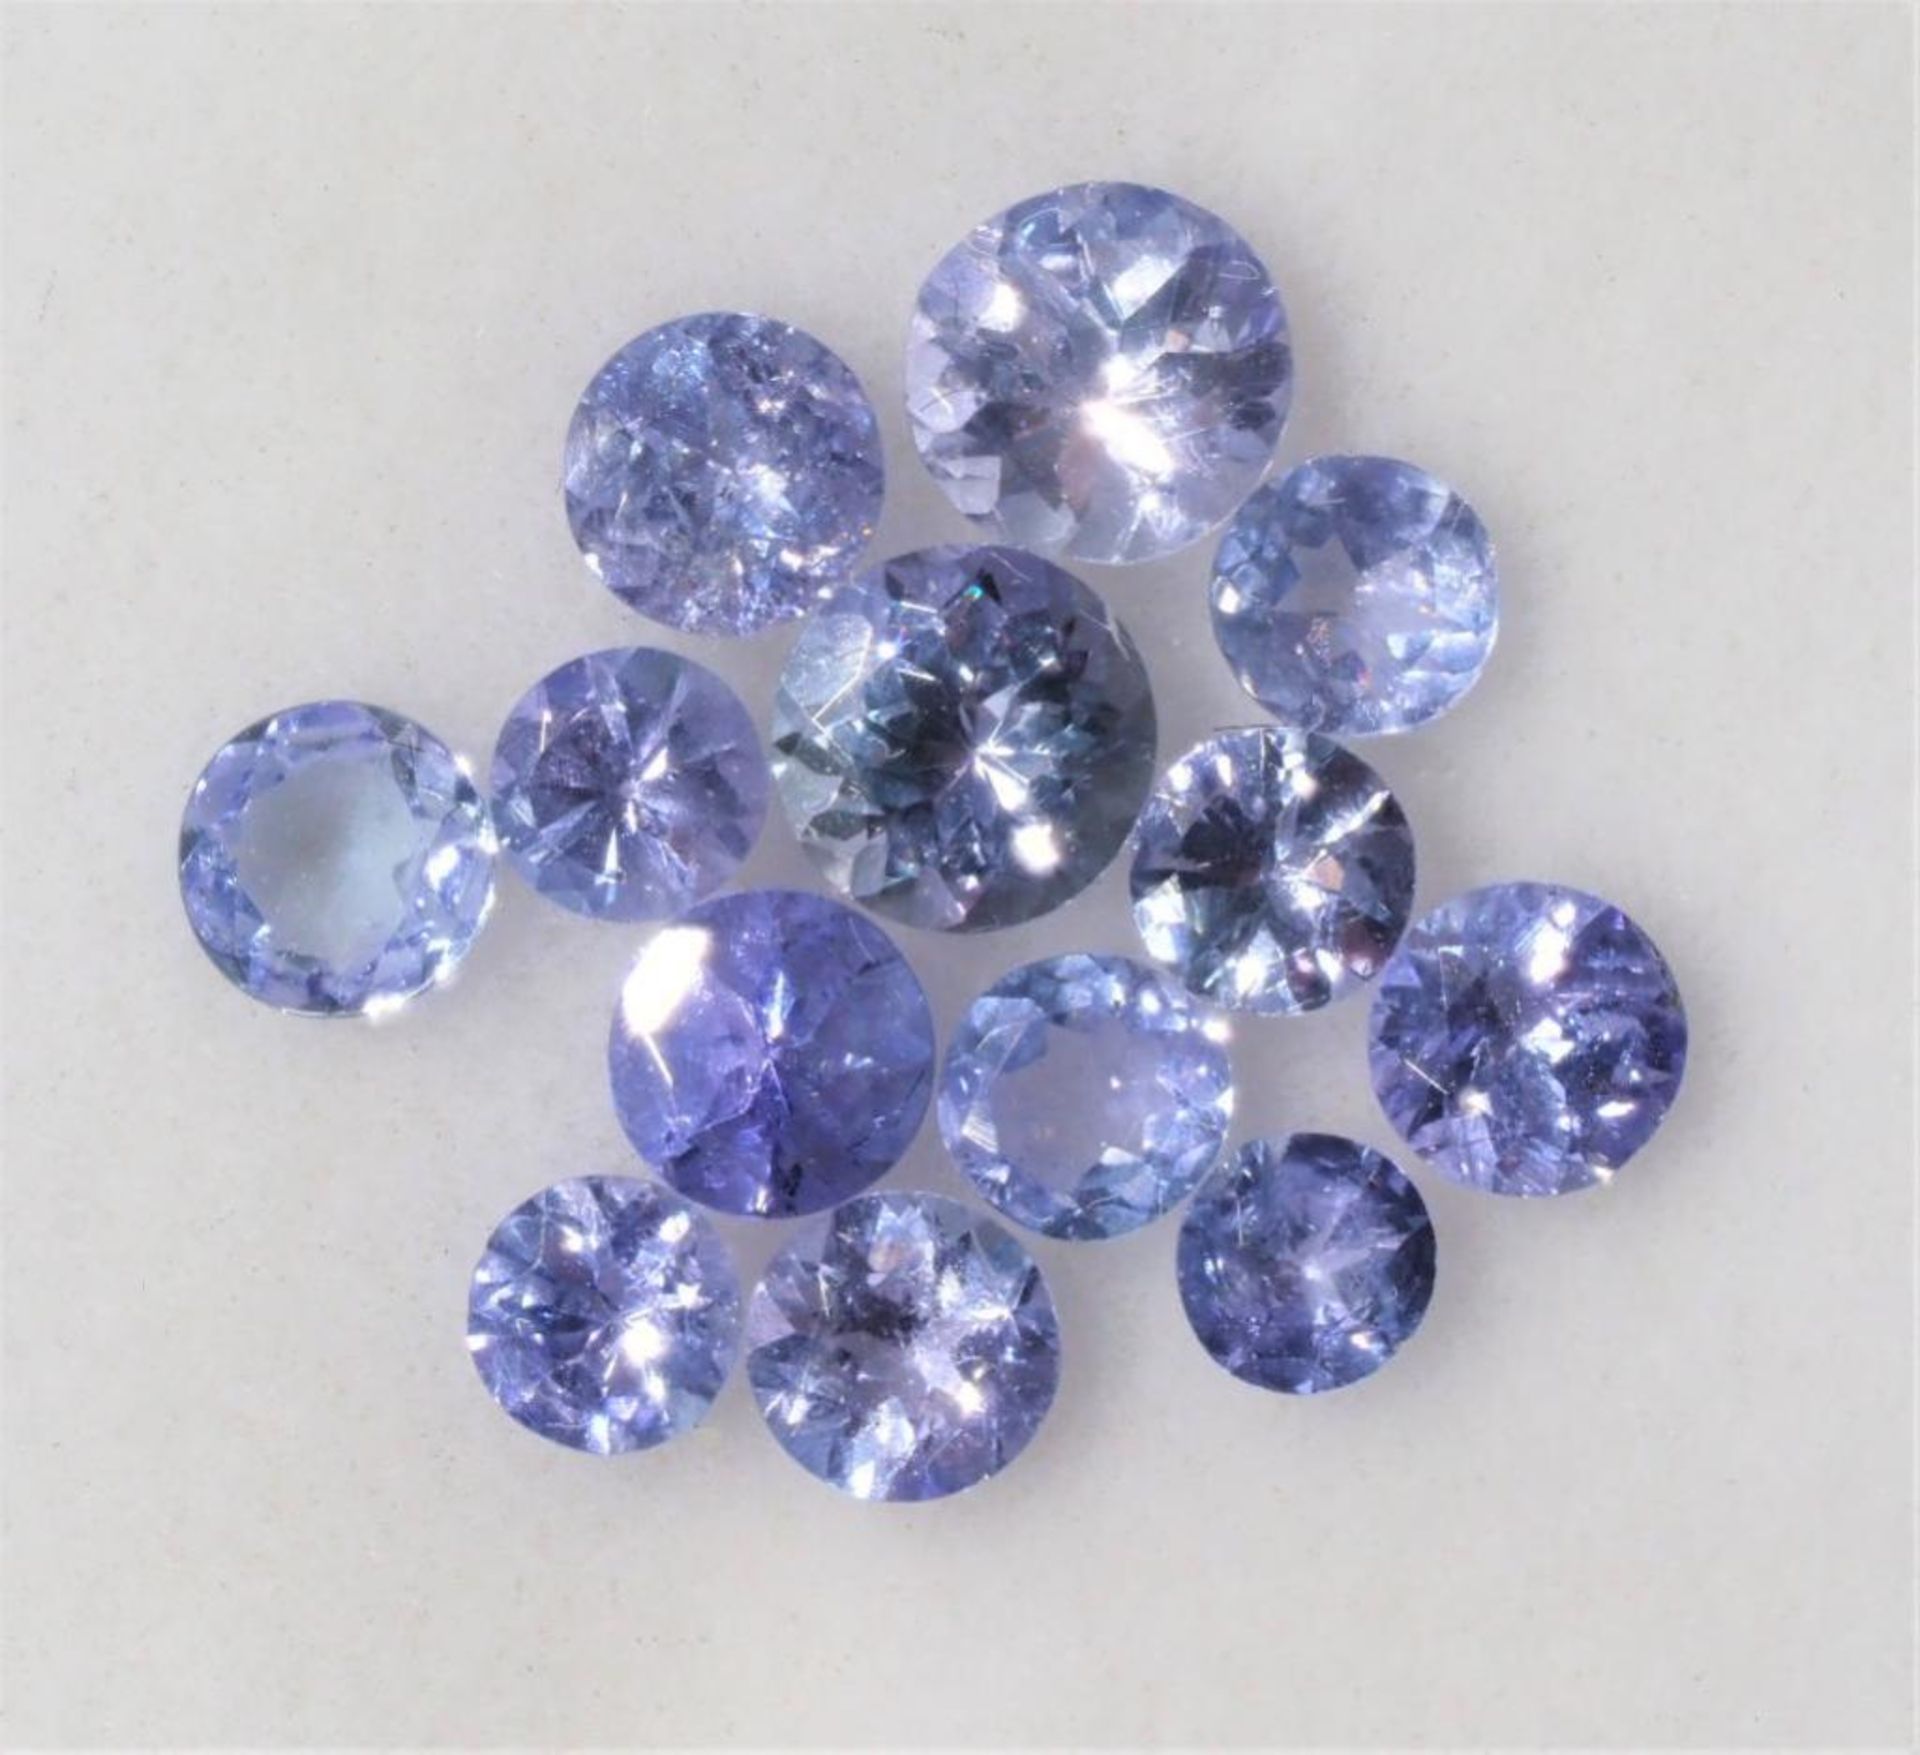 Genuine Tanzanite (December Birthstone, 2.5-4.5mm app.2ct) Gemstones. Retail $200